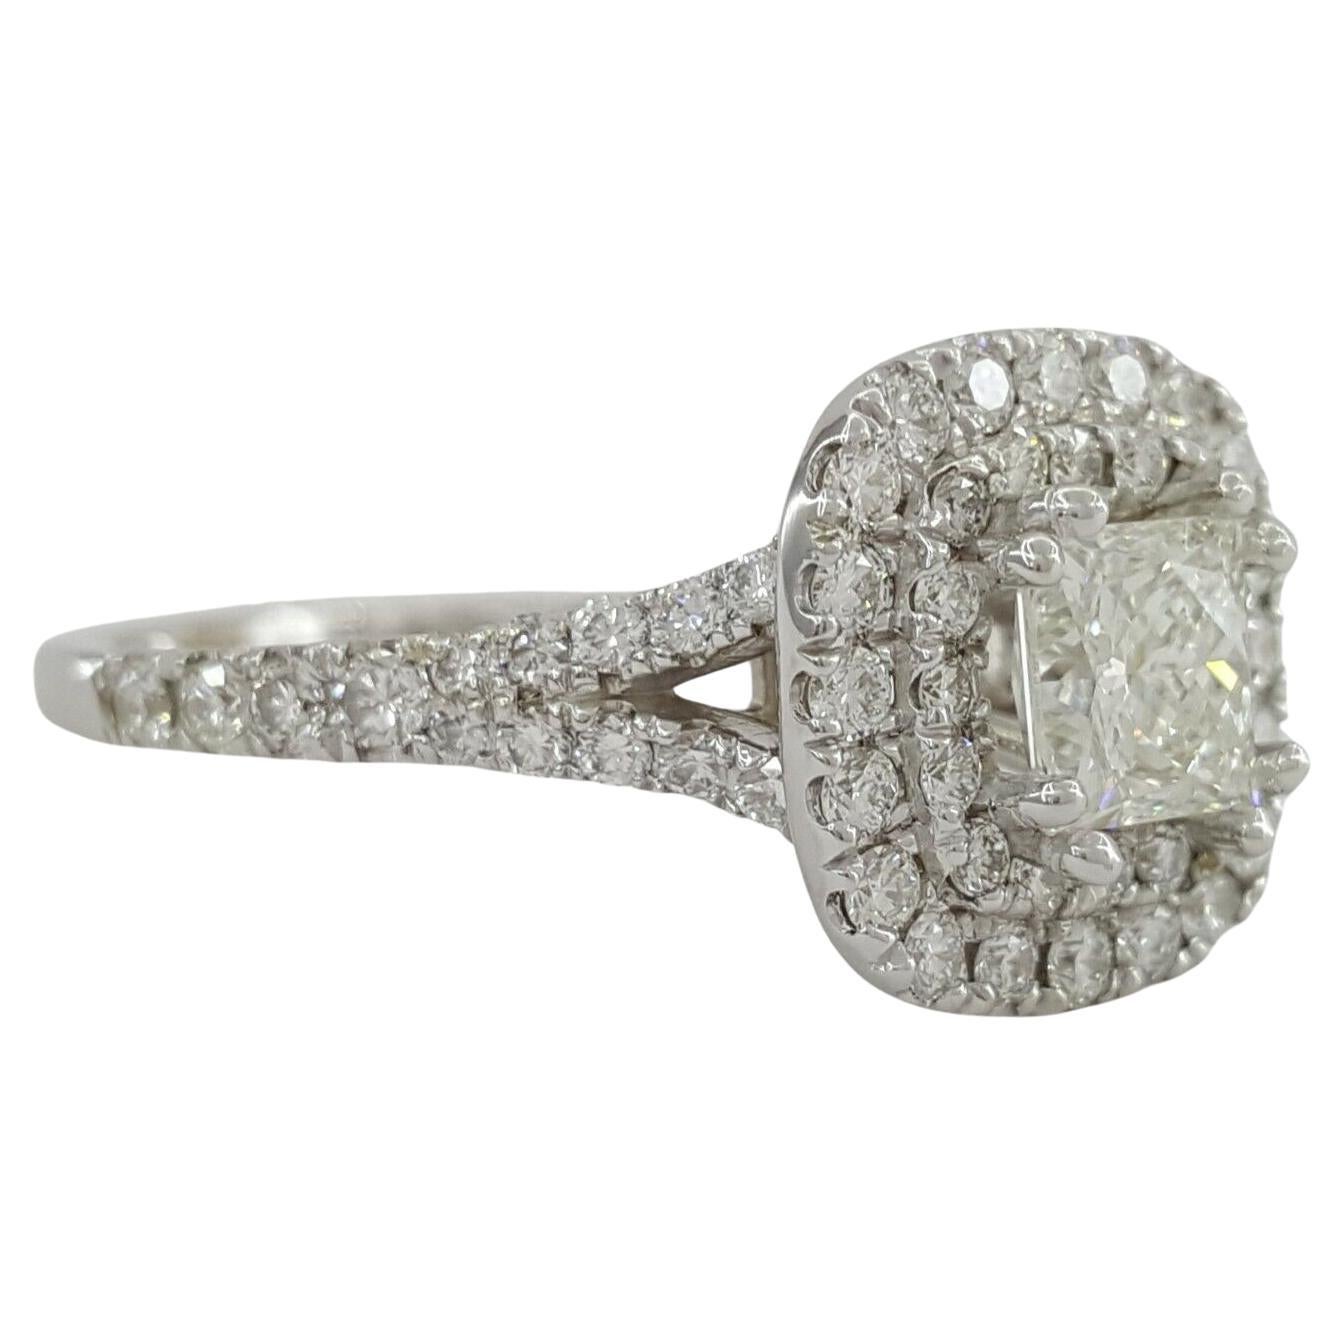 Atemberaubende 1,39 ct Gesamtgewicht 14K Weißgold LEO® Princess Brillantschliff Diamant Double Halo Verlobungsring!

Dieser exquisite Ring, der Eleganz und Raffinesse ausstrahlt, ist ein wahres Zeugnis der Liebe und Schönheit.

Wesentliche